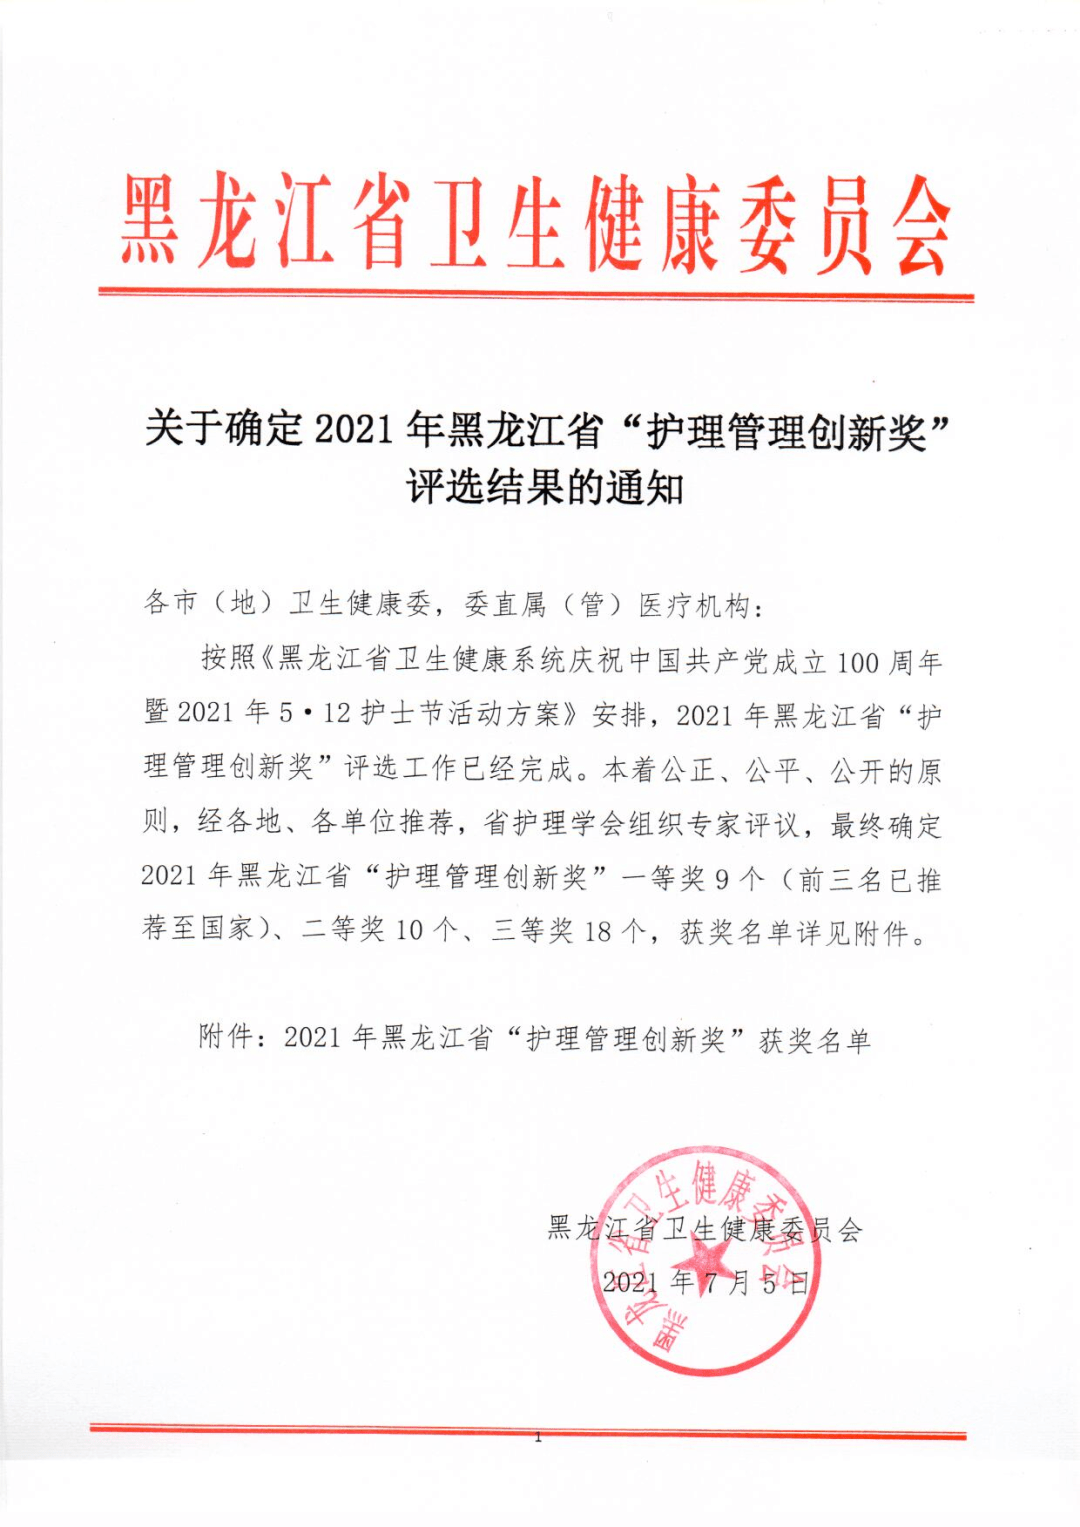 我院护理部荣获2021年黑龙江省护理管理创新奖一等奖